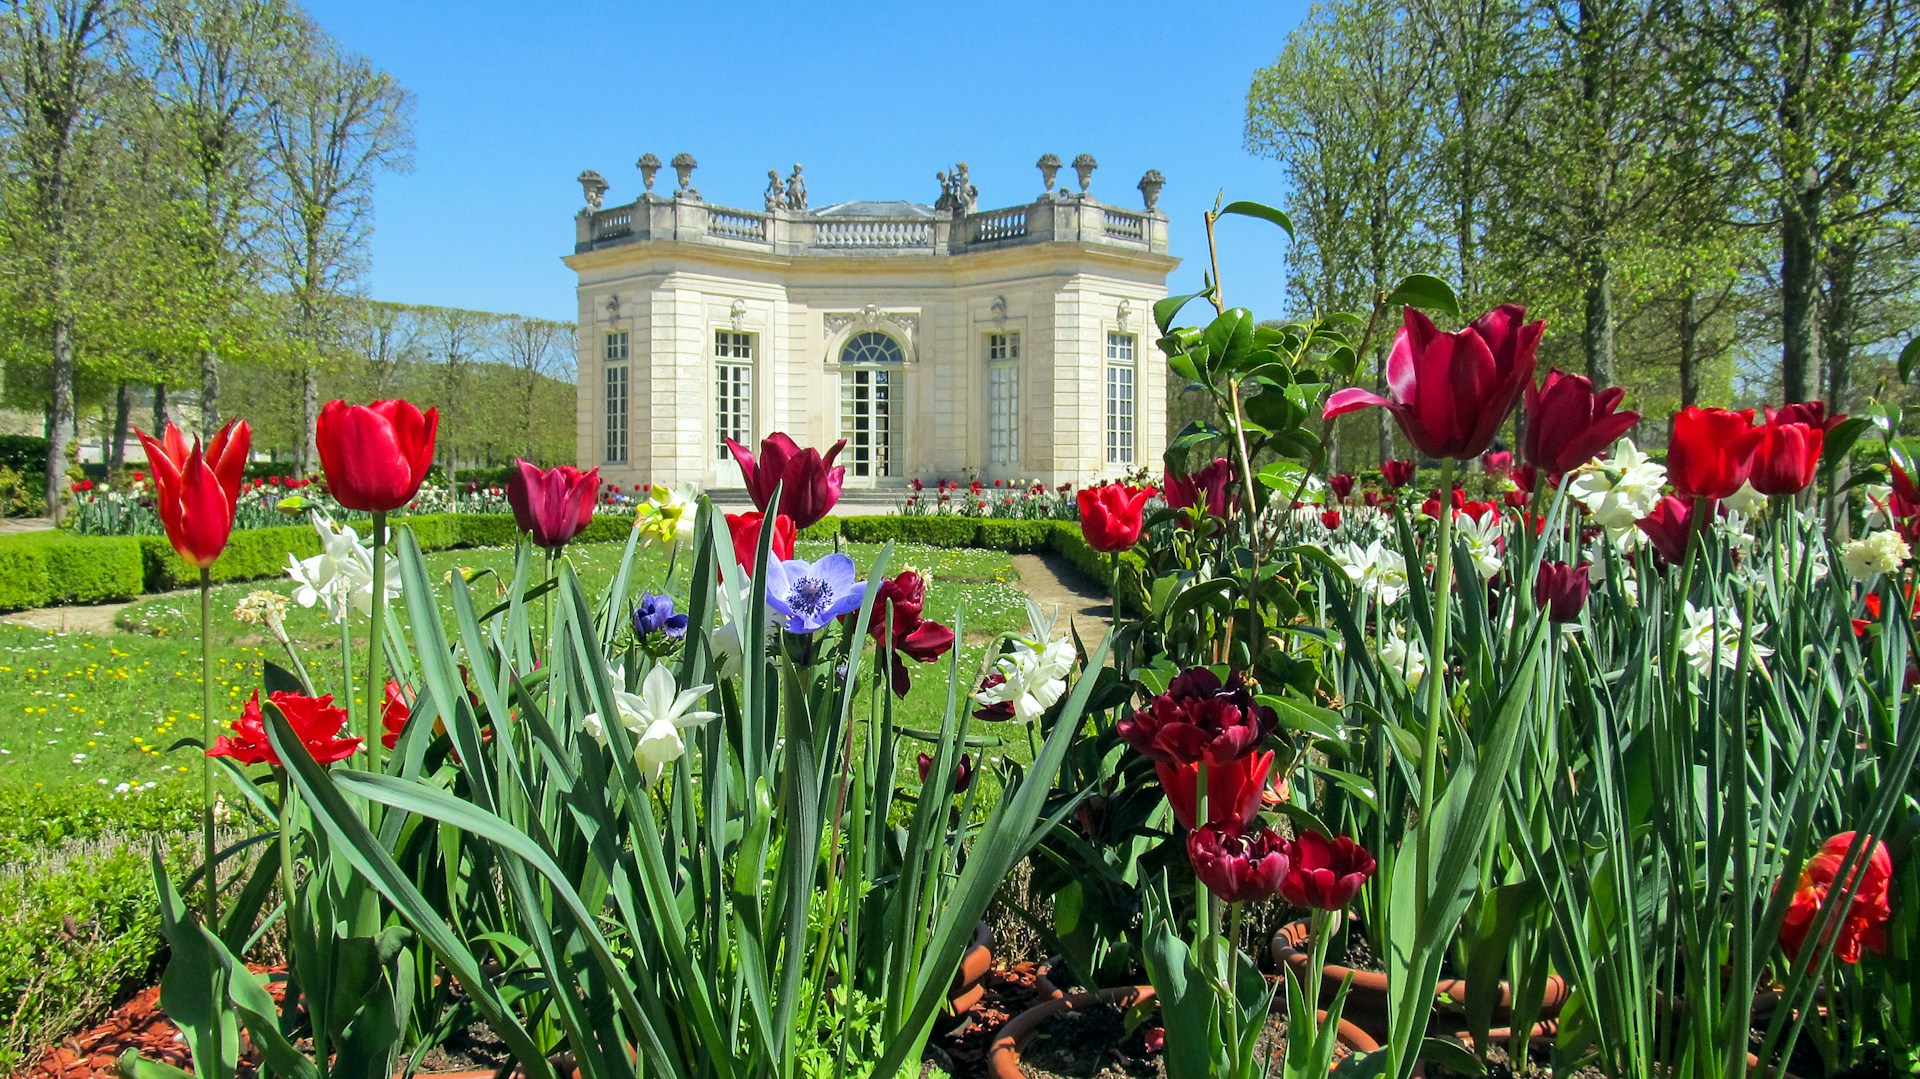 A garden at Versailles